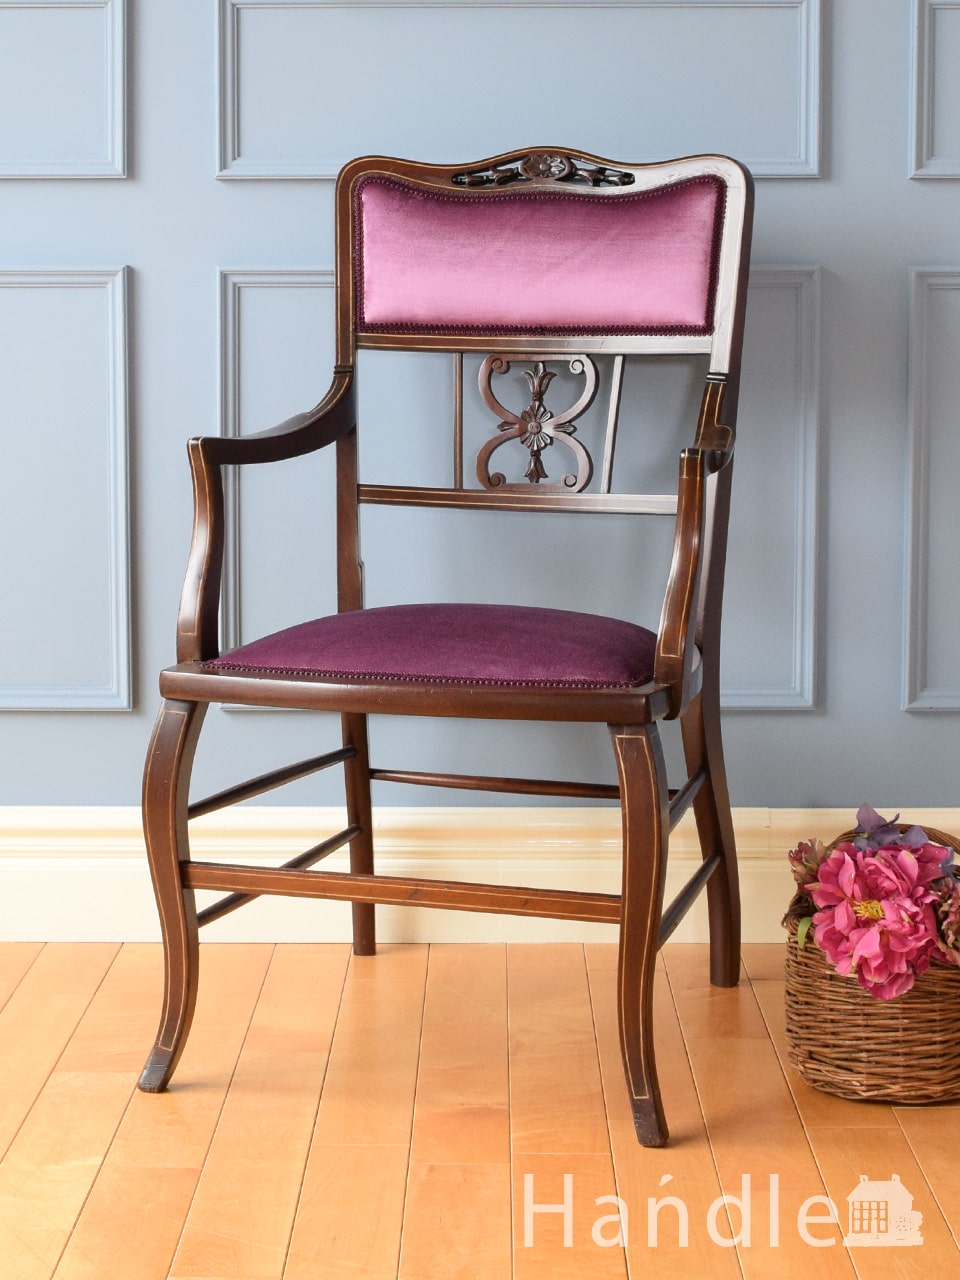 イギリスで見つけた美しいアーム付き椅子、透かし彫りの入った